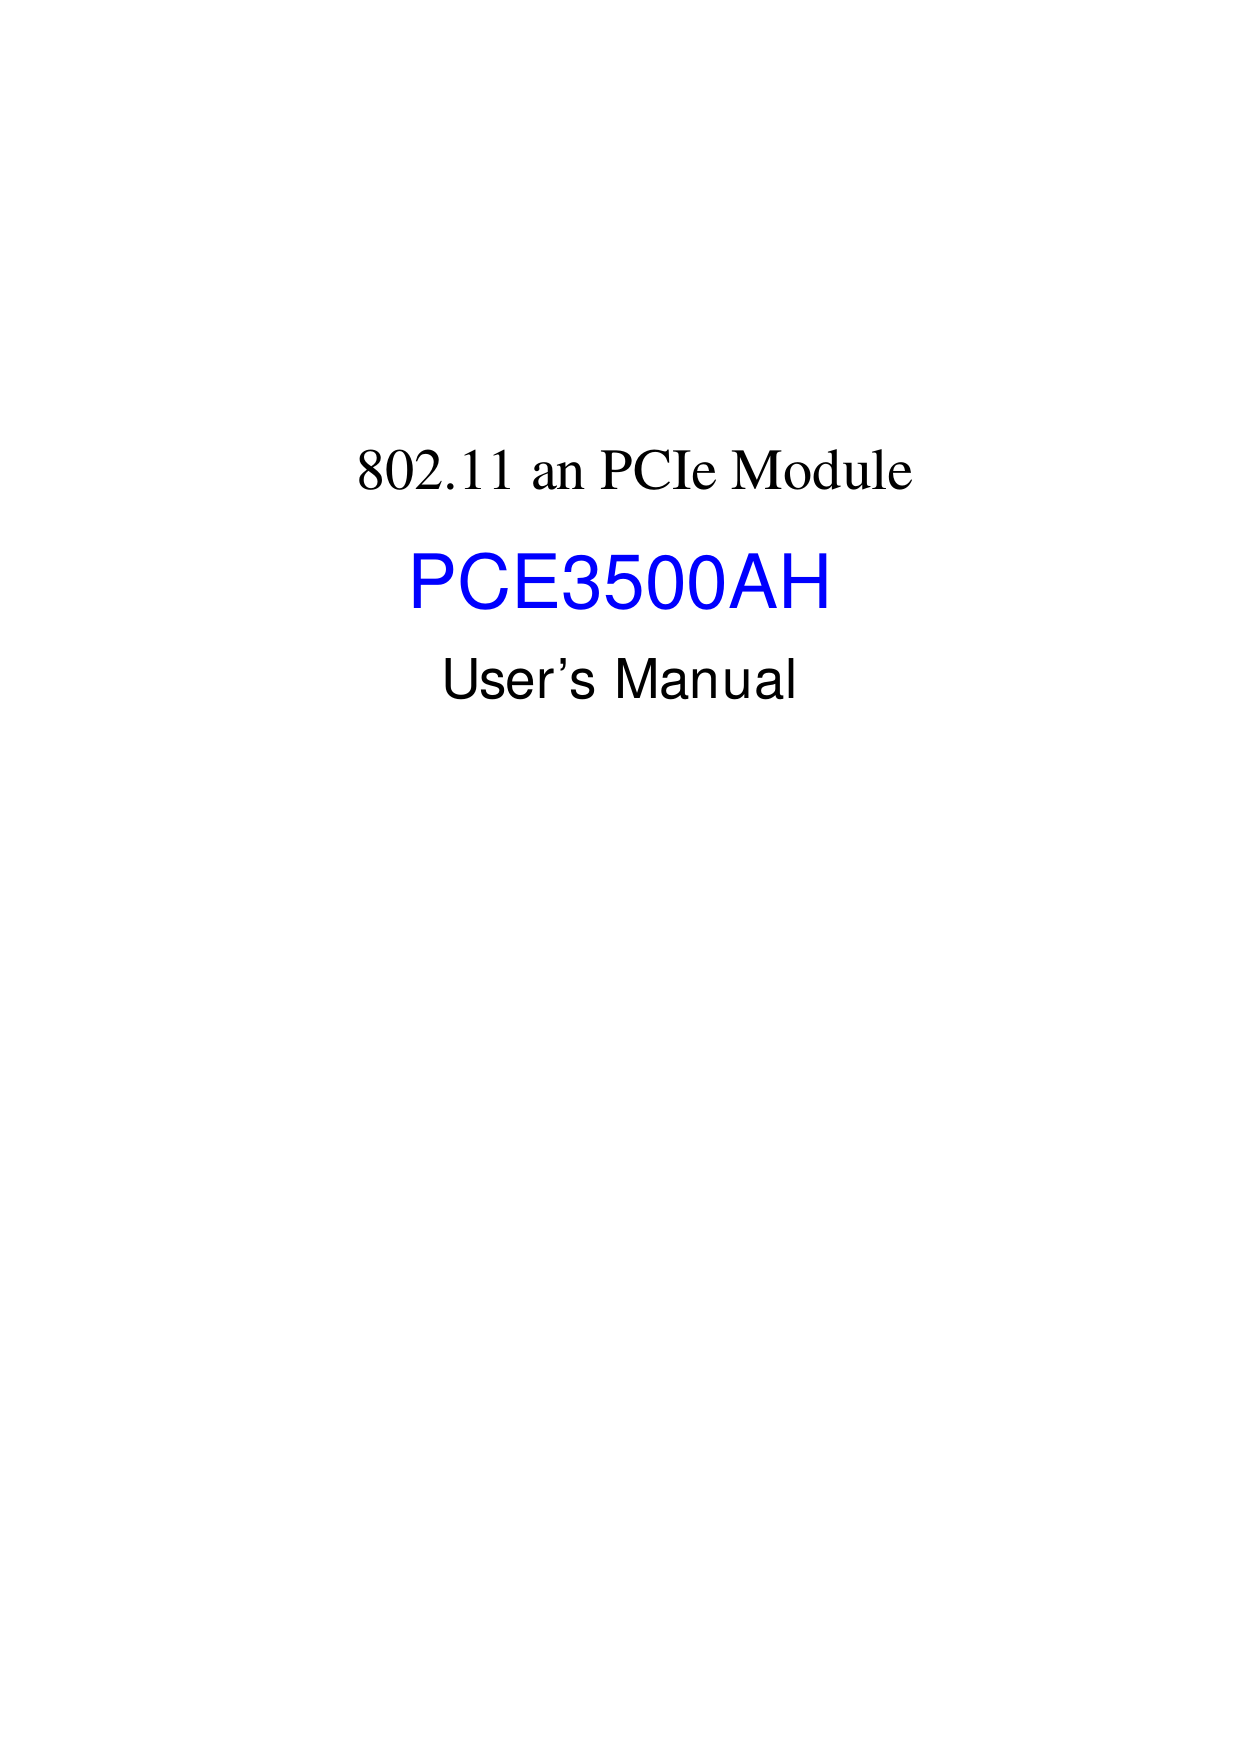       802.11 an PCIe Module  PCE3500AH User’s Manual  